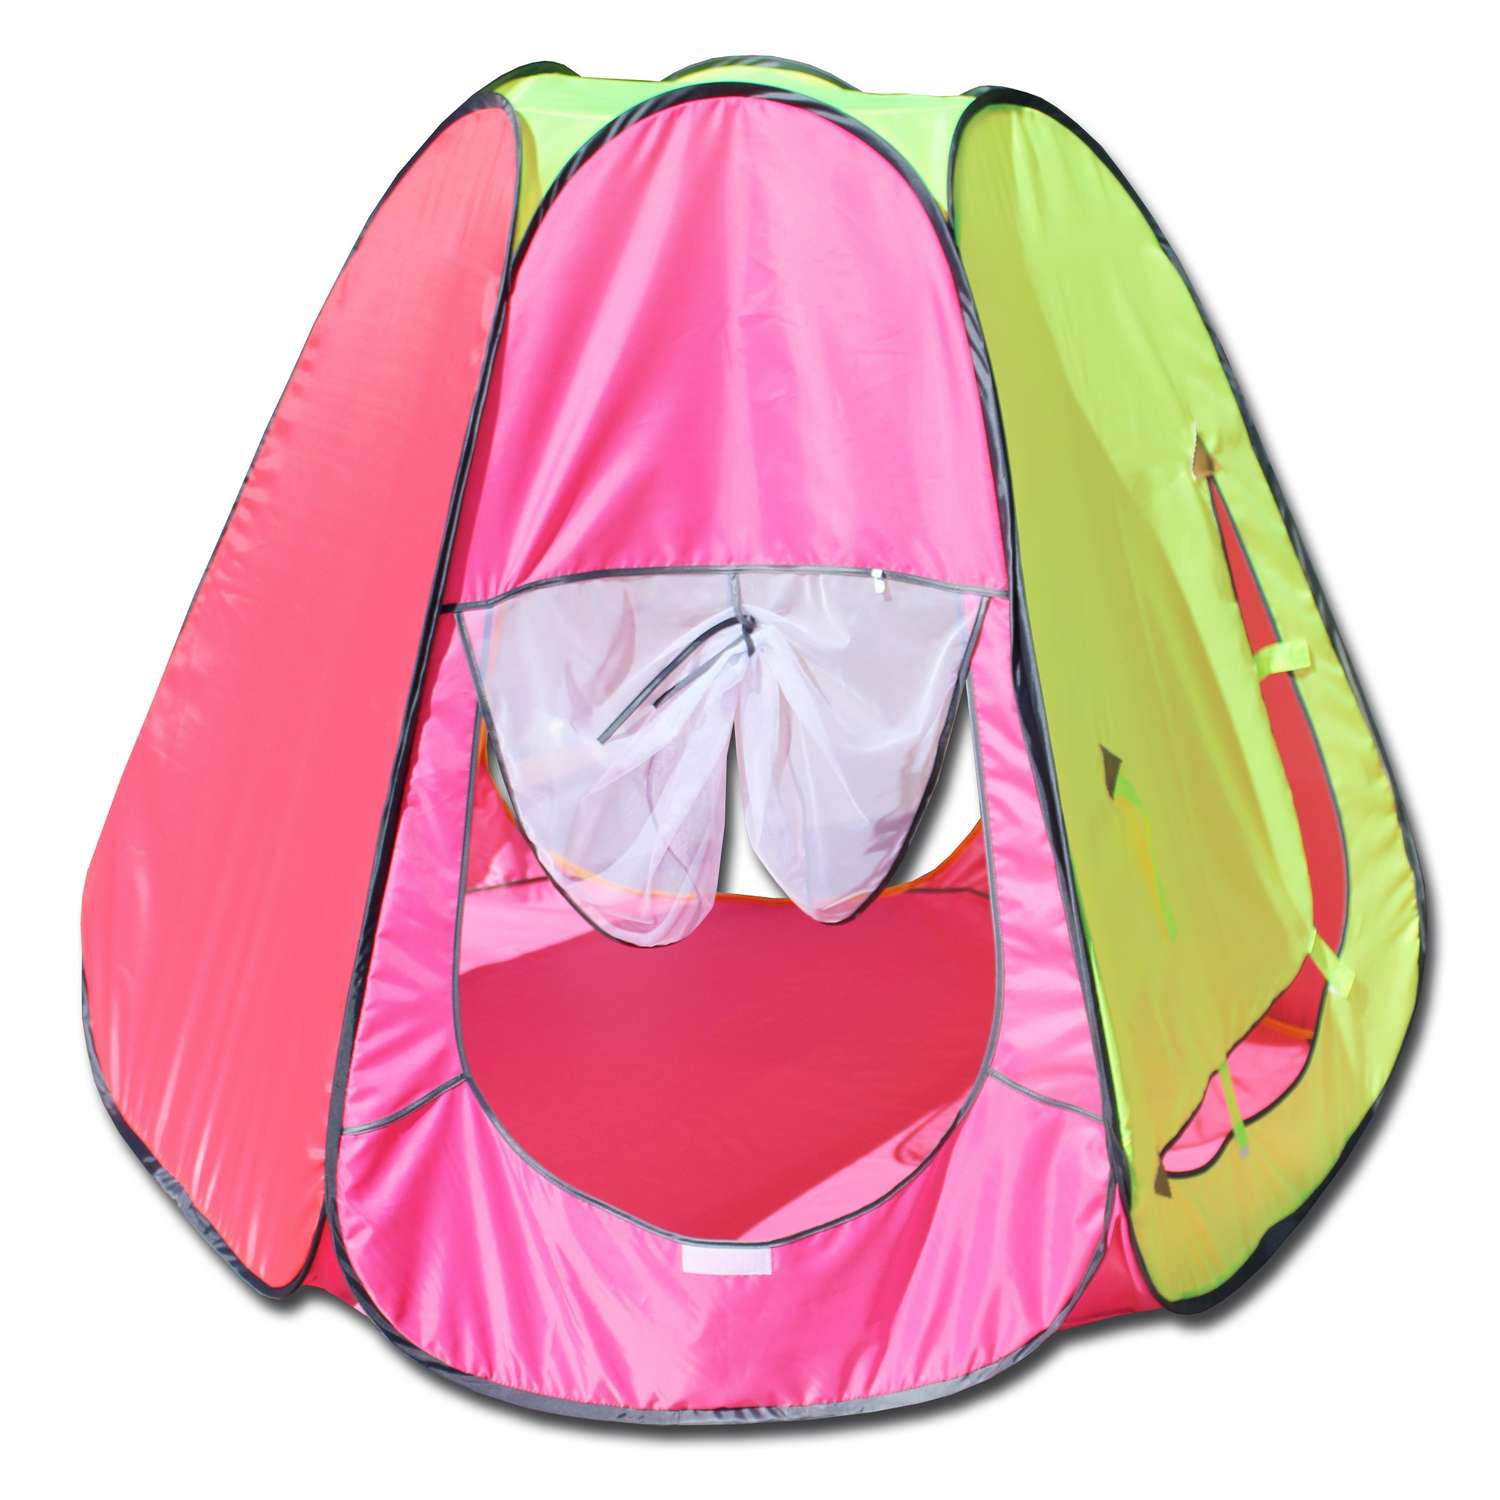 Игровая палатка Belon familia шестигранная цвет яркий розовый/коралл/лимон/розовый светлый 120х120х110 см - фото 1